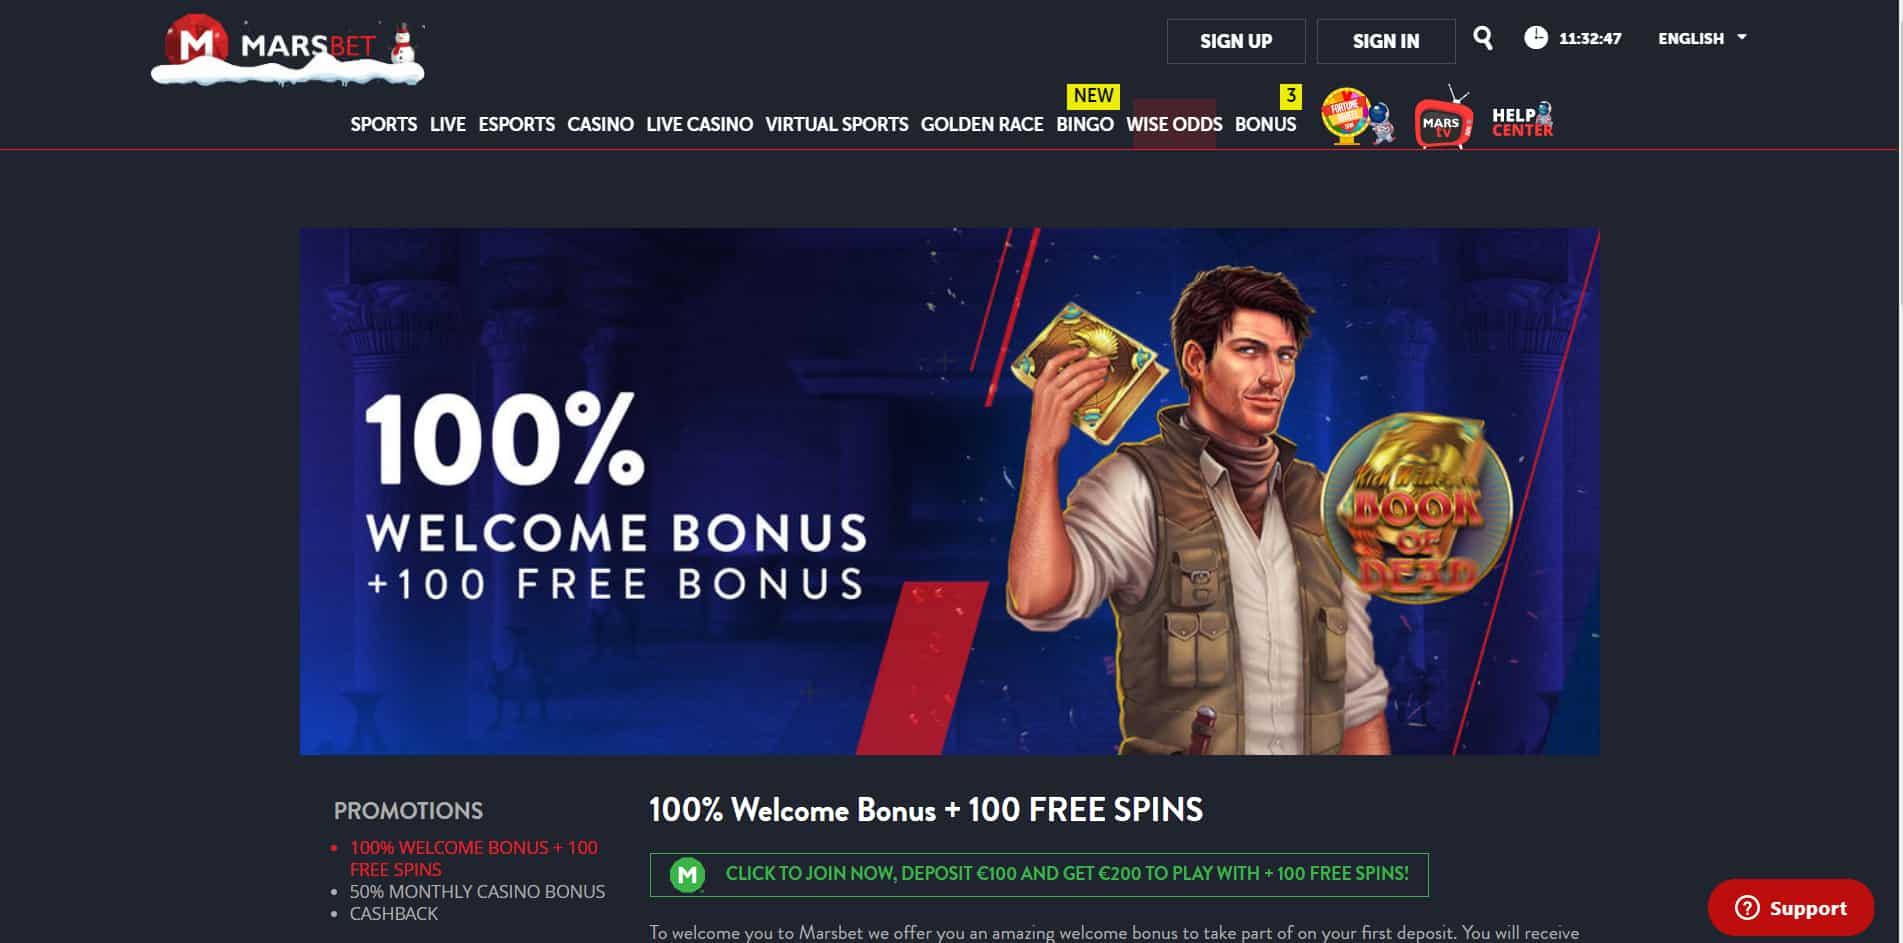 Marsbet casino homepage